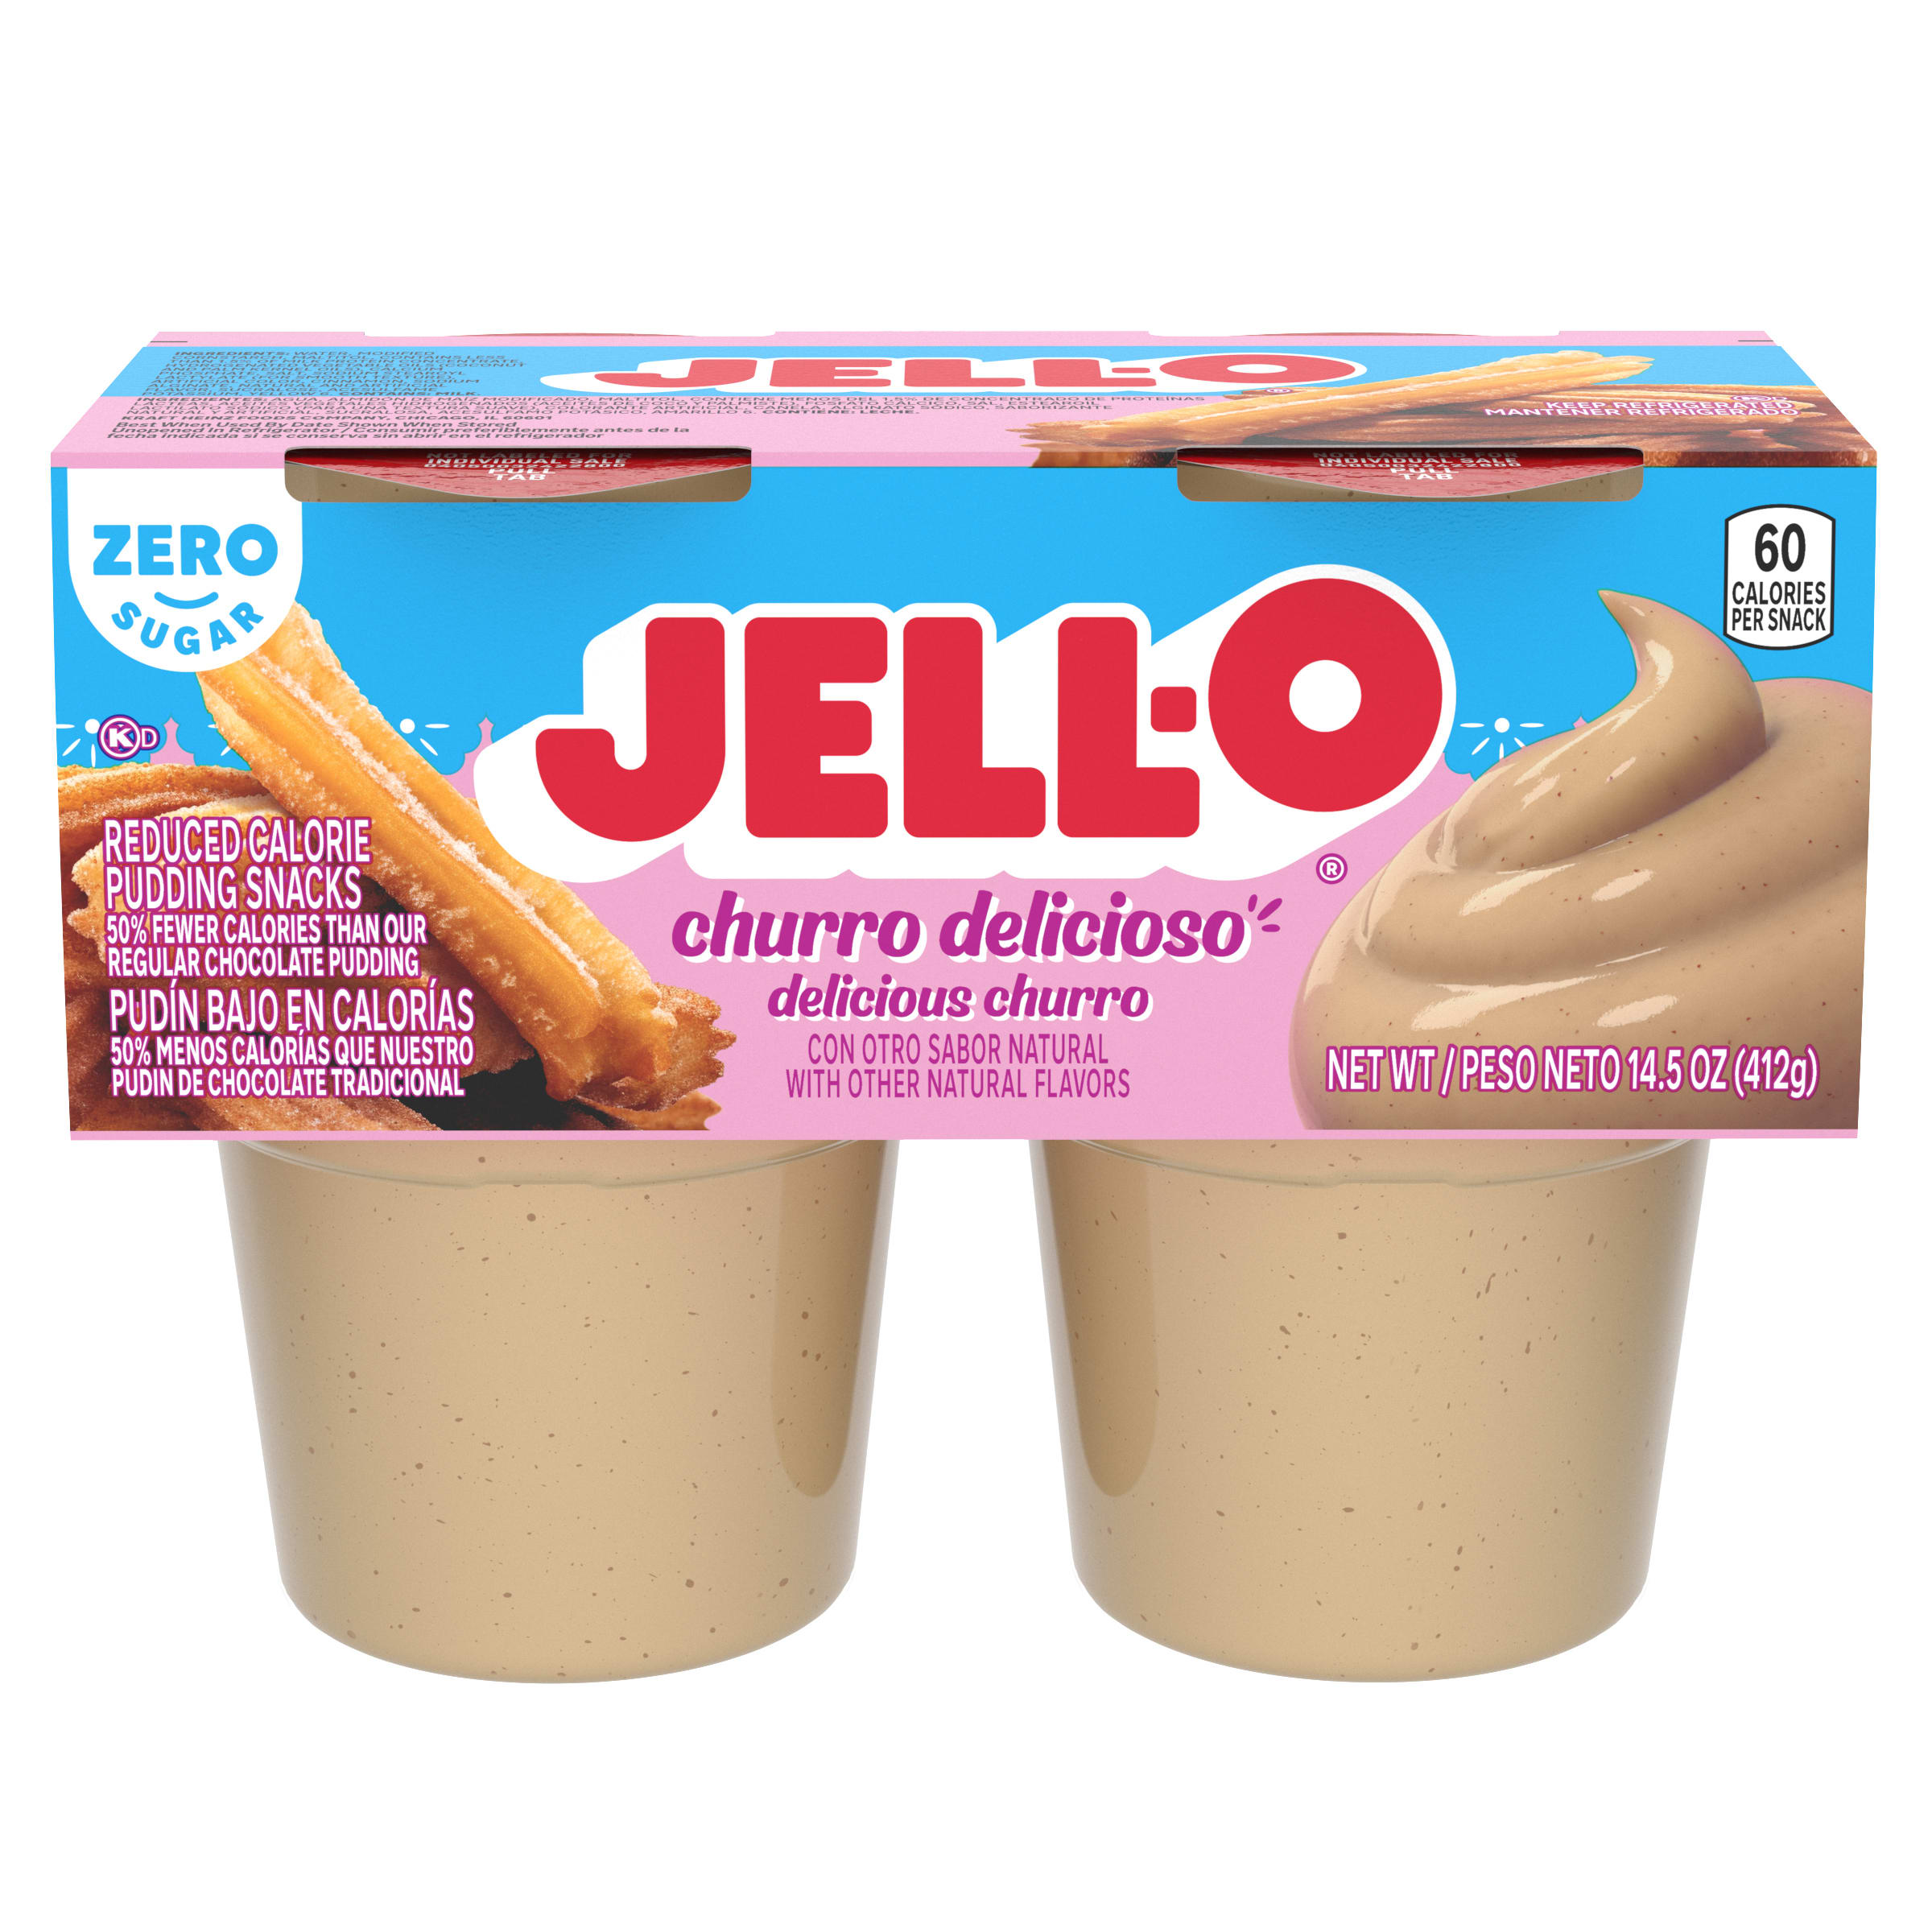 Zero Sugar Churro Delicioso Ready-to-Eat Pudding Snack Cups